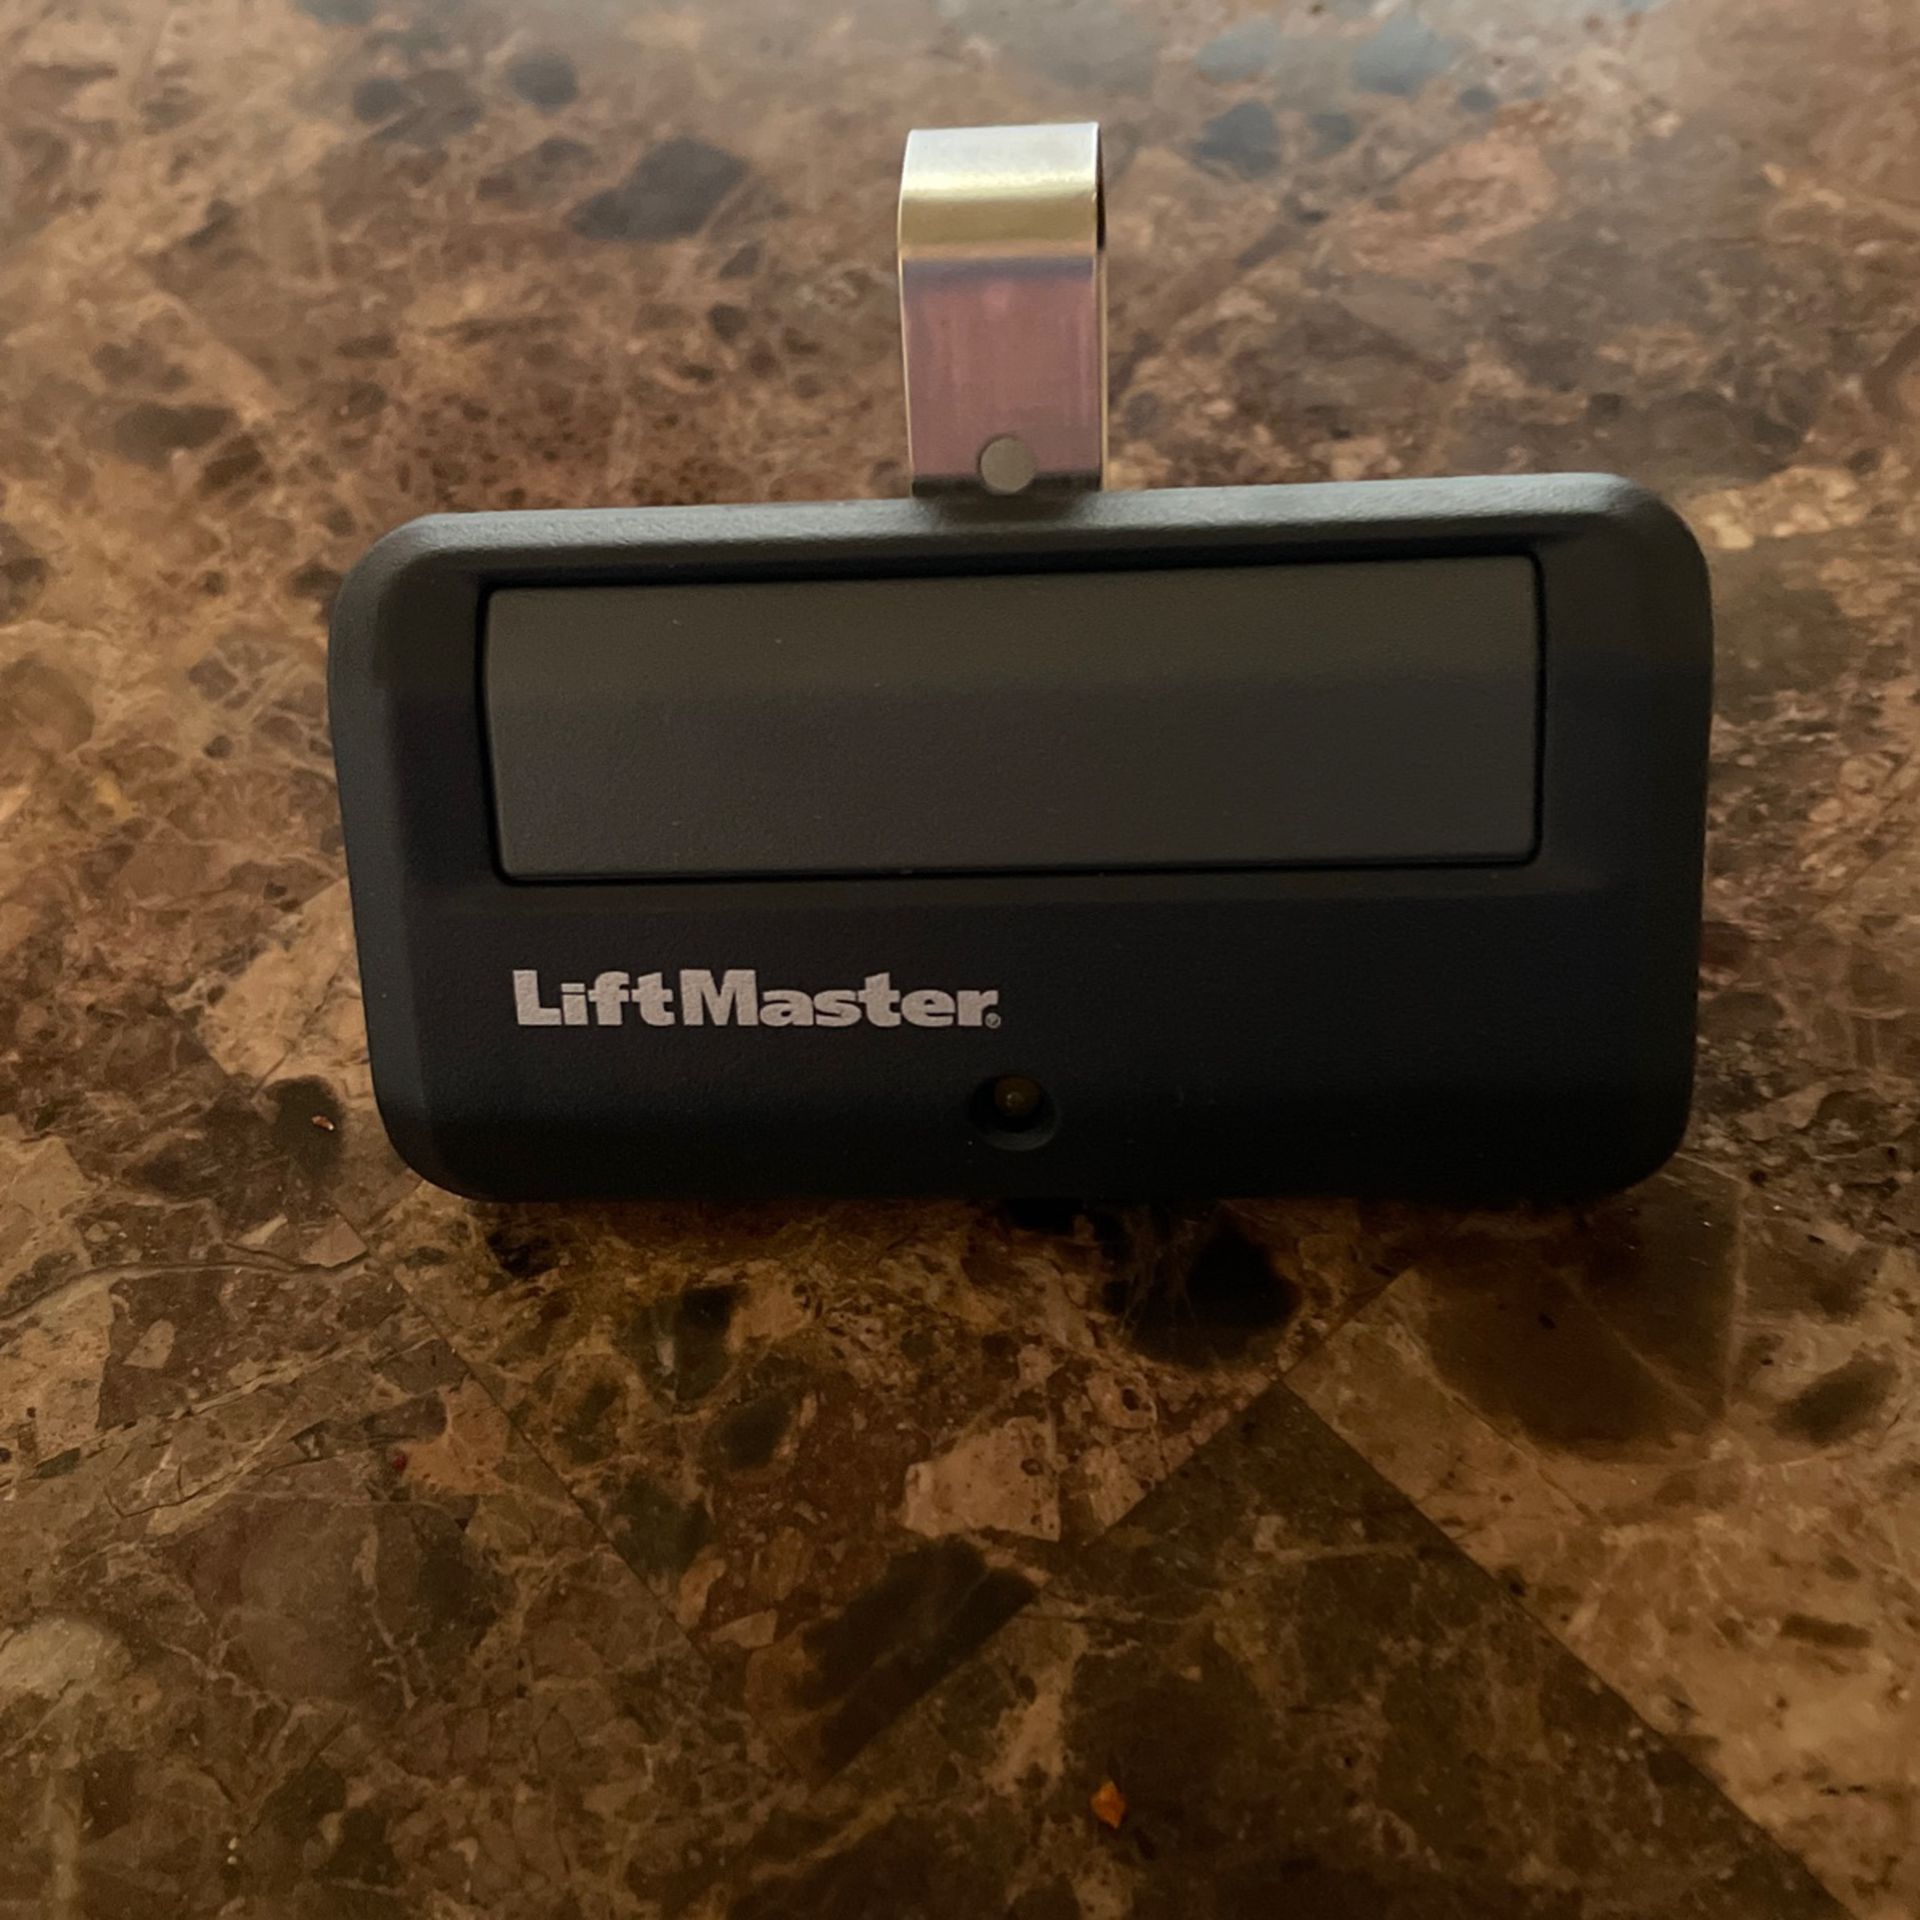 LiftMaster 1-button Garage Door Opener